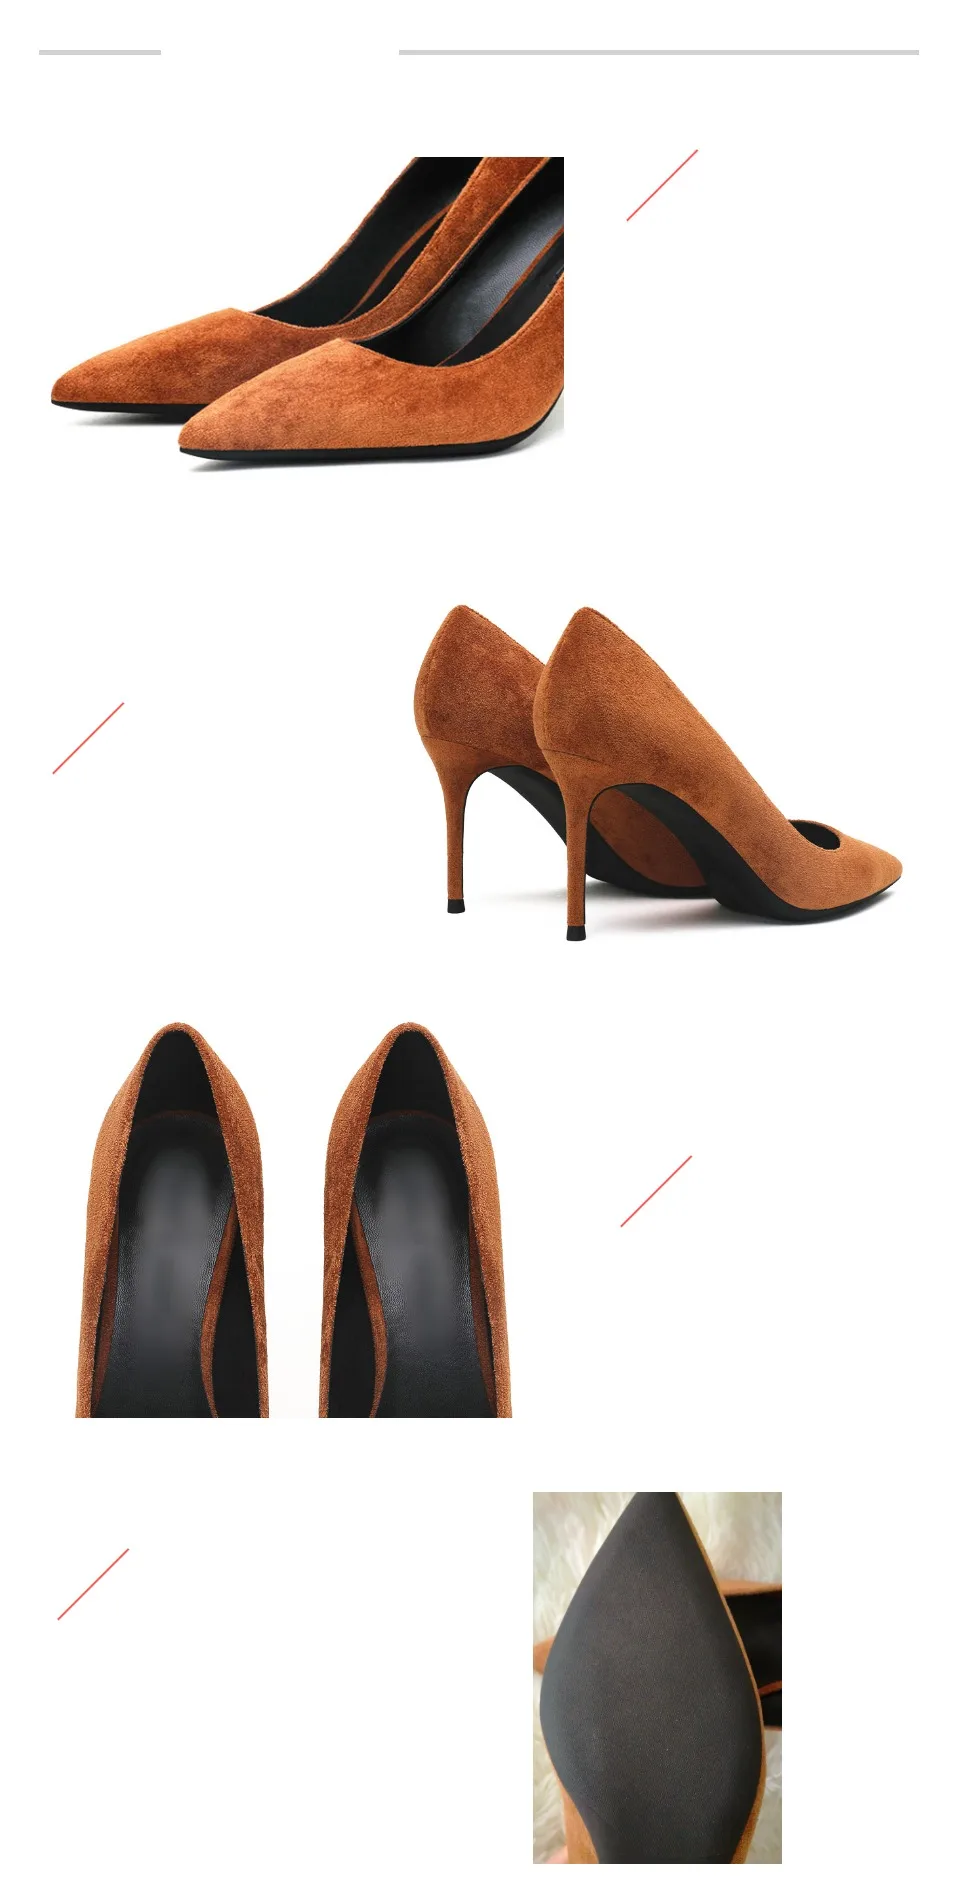 KATELVADI/обувь женские туфли-лодочки модные свадебные туфли из флока коричневого цвета на высоком каблуке 8 см пикантные женские вечерние туфли с острым носком K-320